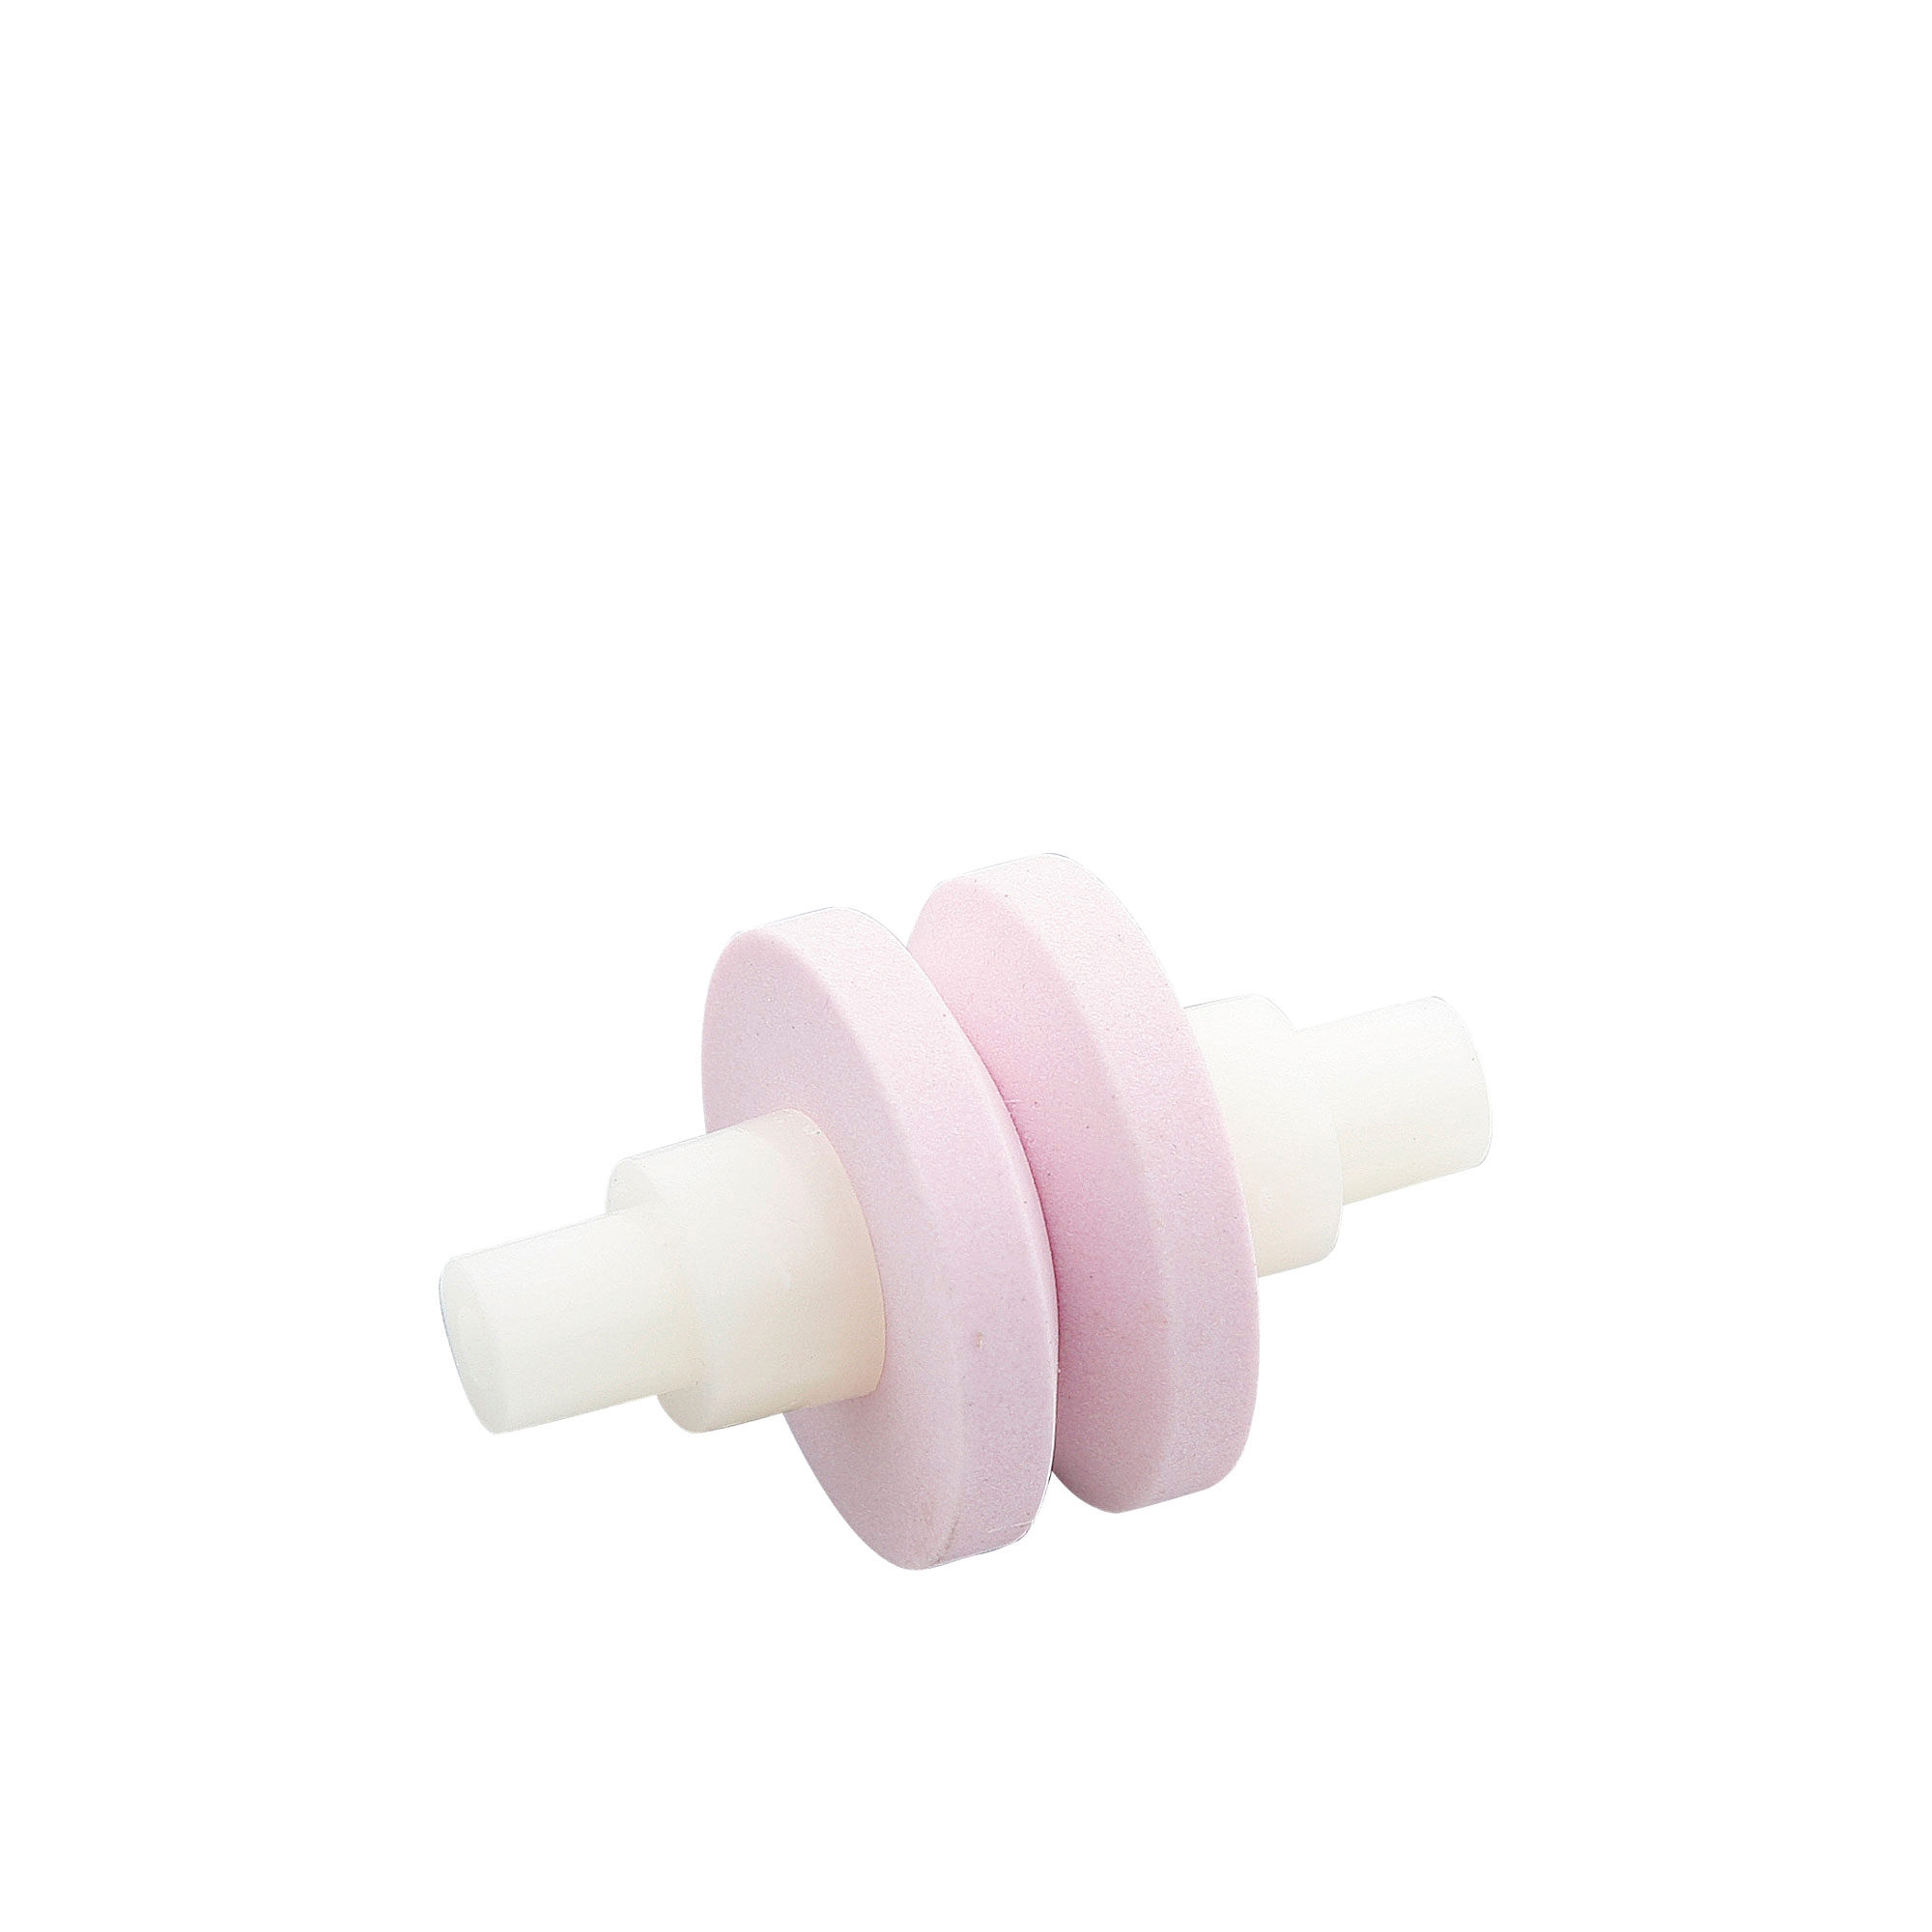 Global MinoSharp Water Sharpener Ceramic Replacement Wheel Pink Image 1